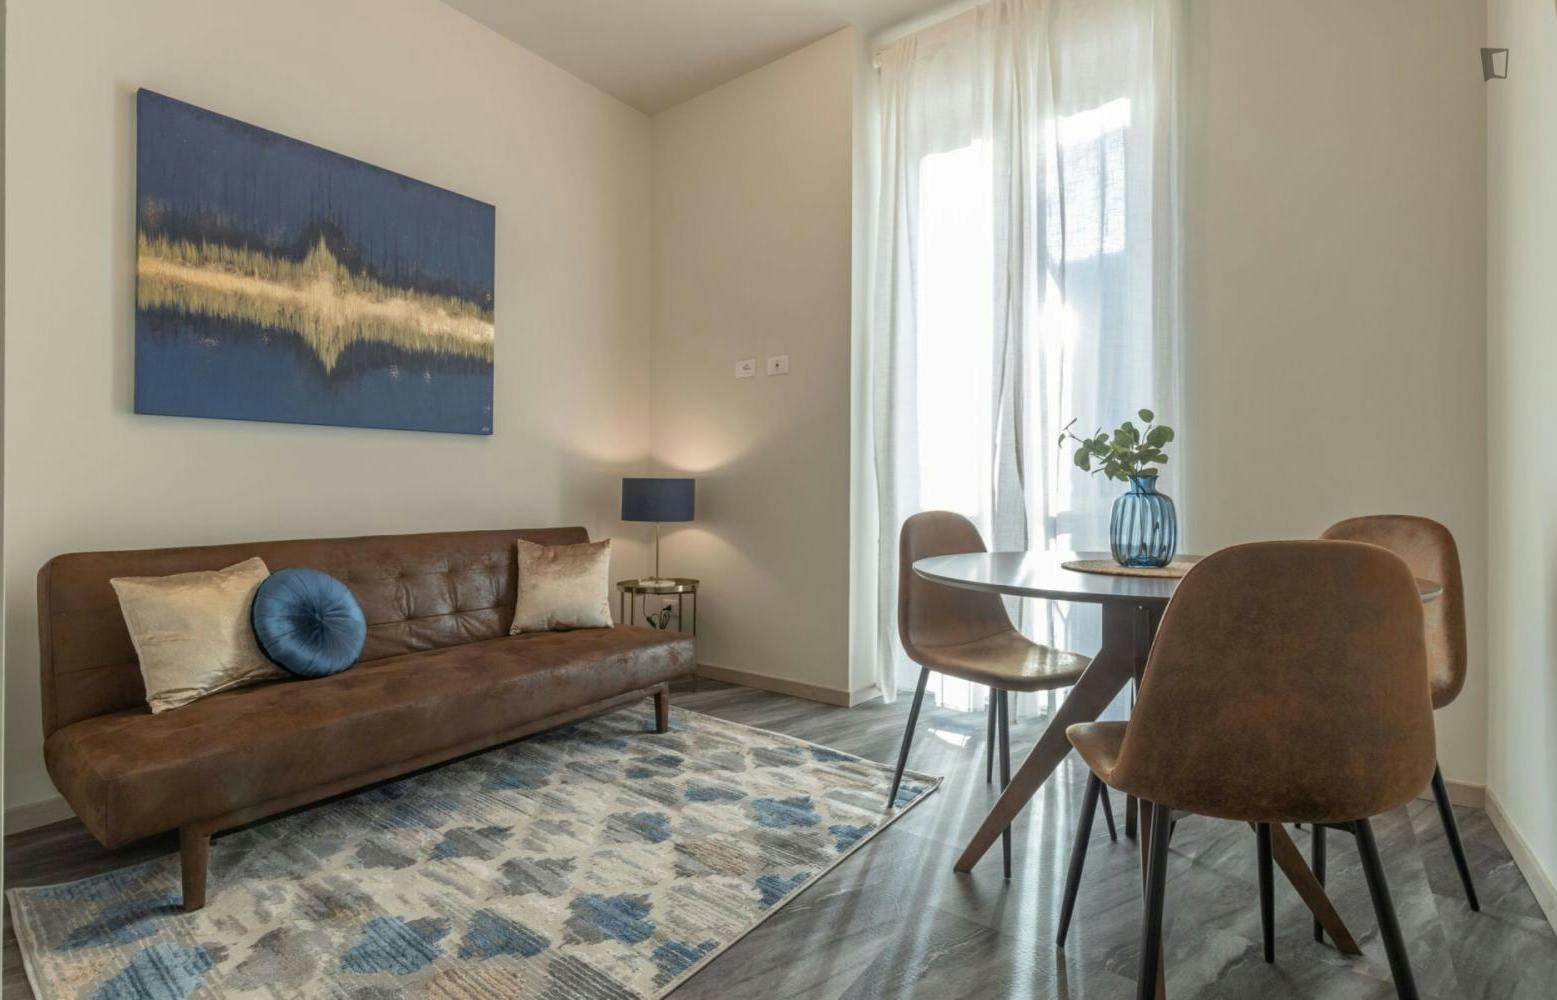 Attractive 1-bedroom apartment near Università degli Studi di Pavia